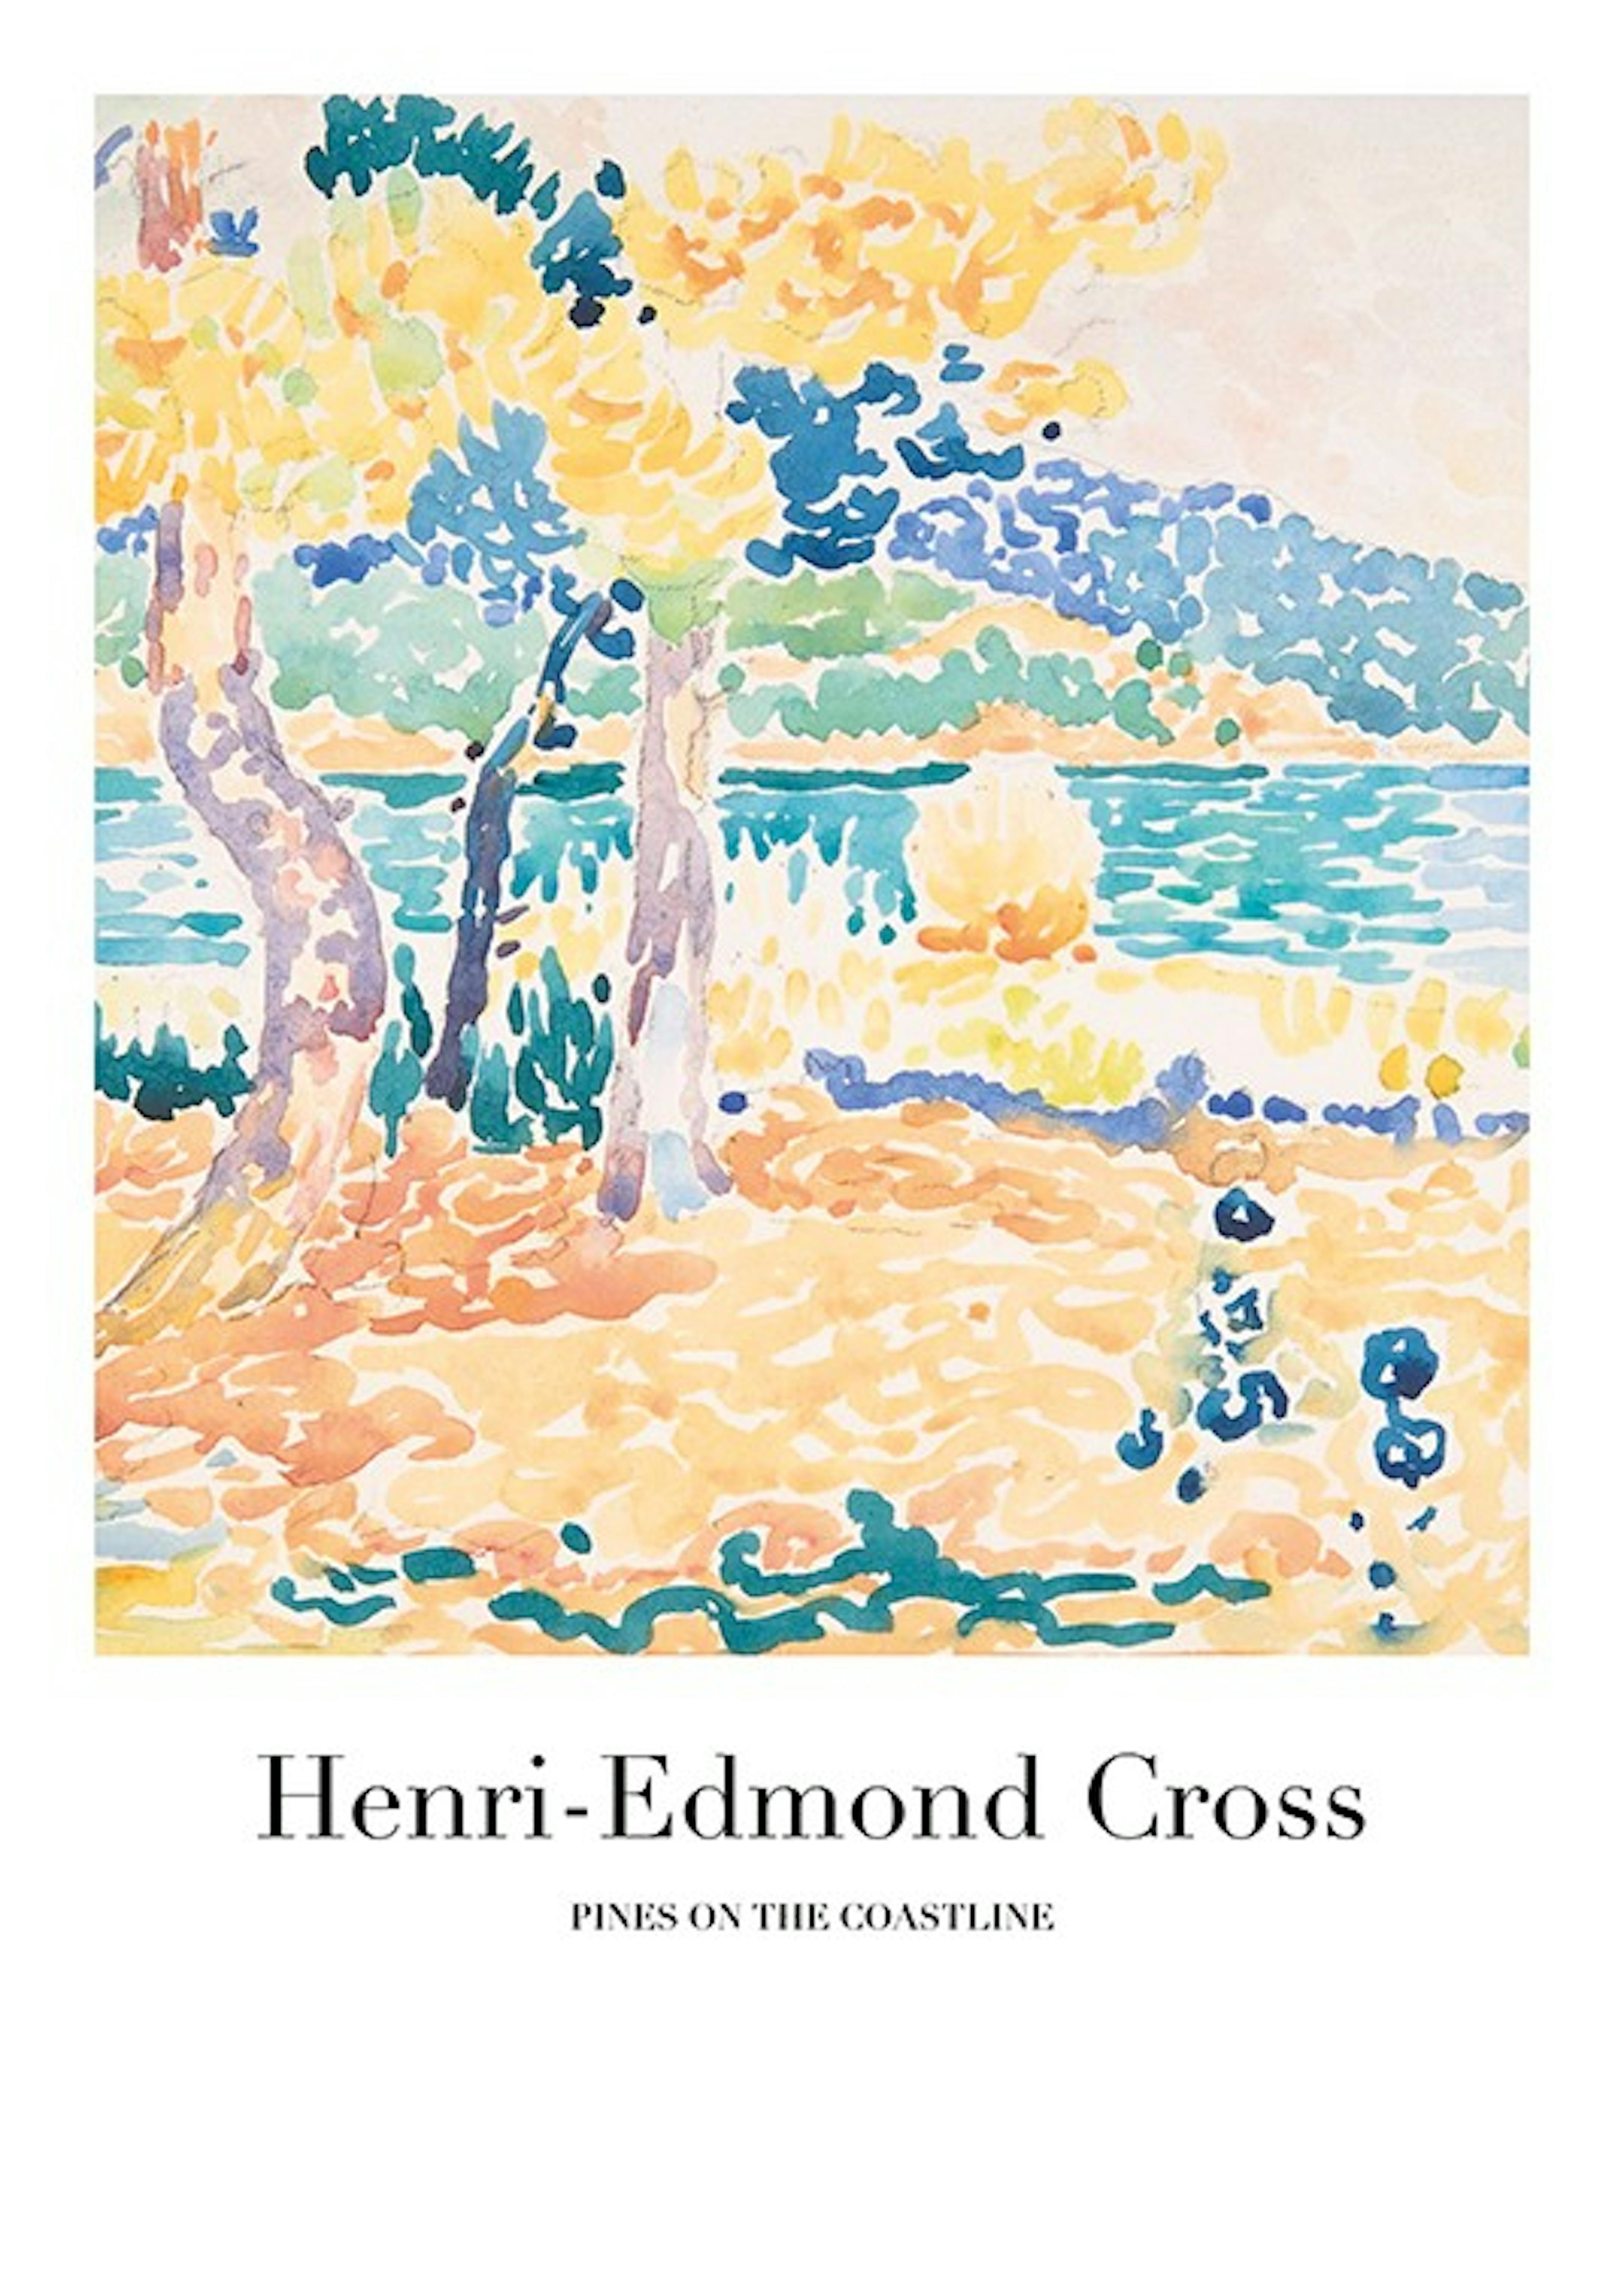 Henri-Edmond Cross - Pines on the Coastline Print 0